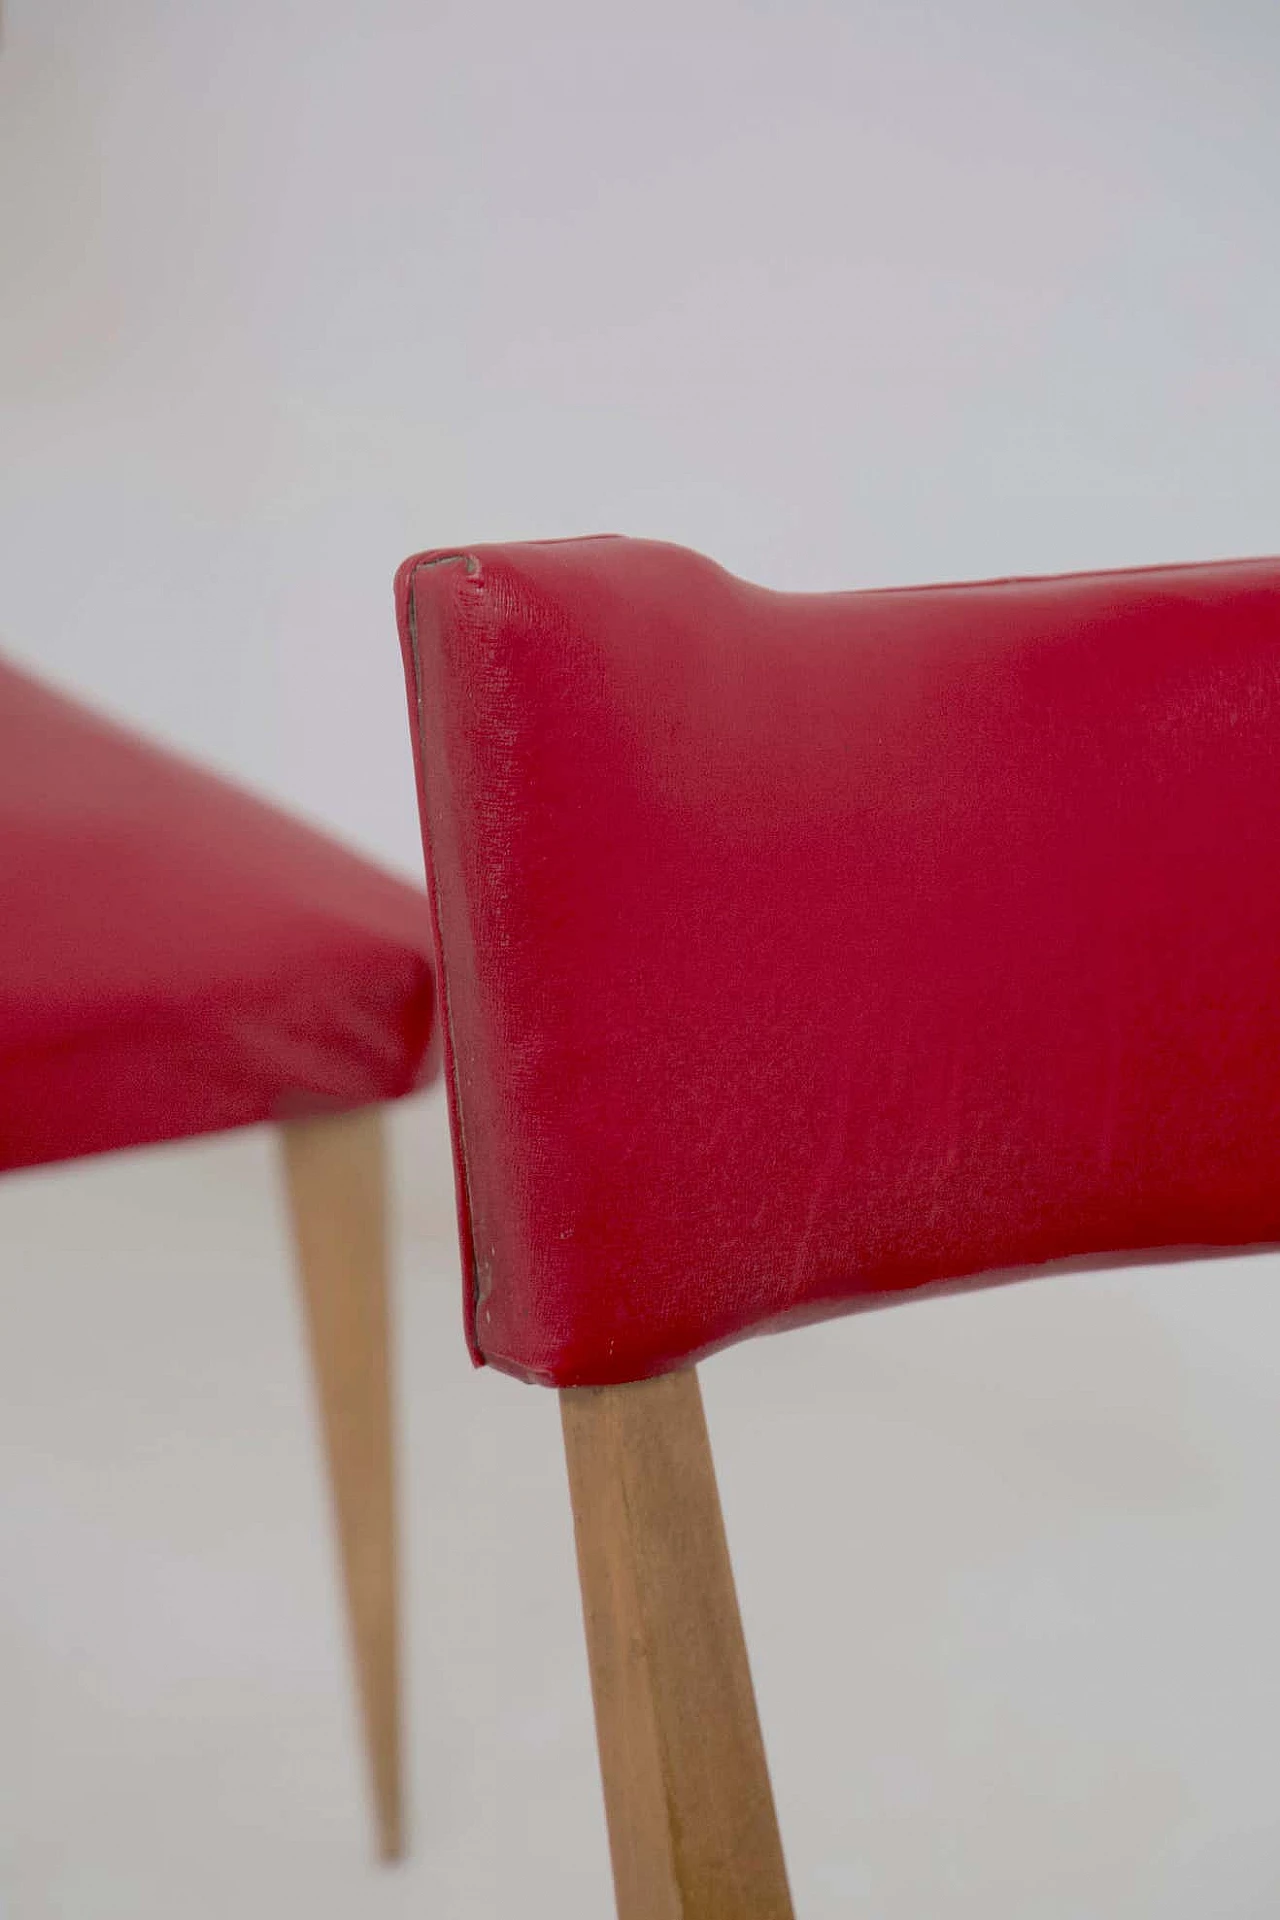 4 Sedie in legno rivestite in skai rosso, anni '50 6